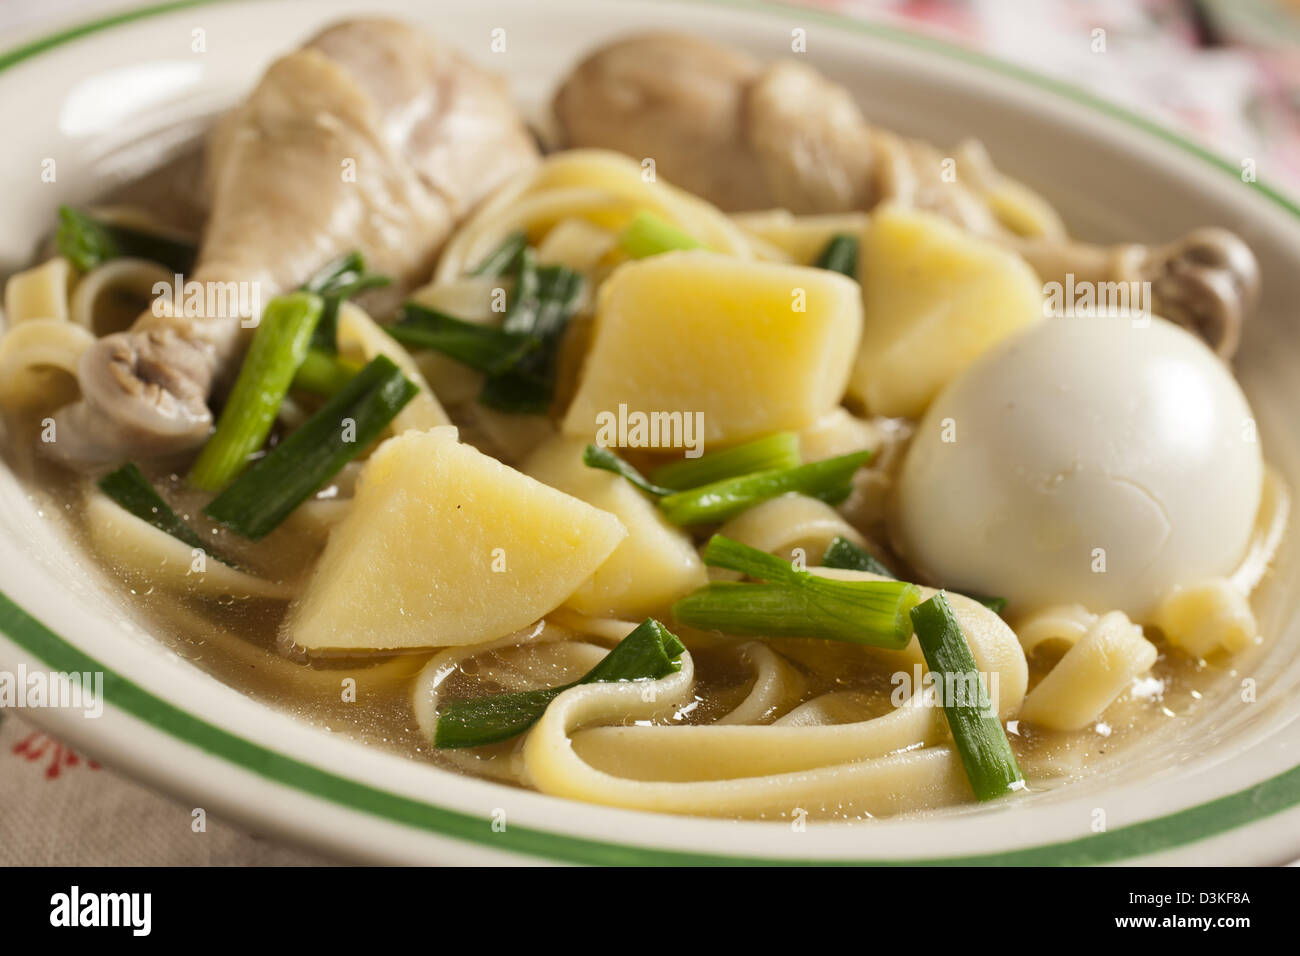 Caldo de gallina, la clásica sopa de pollo con fideos peruana Foto de stock